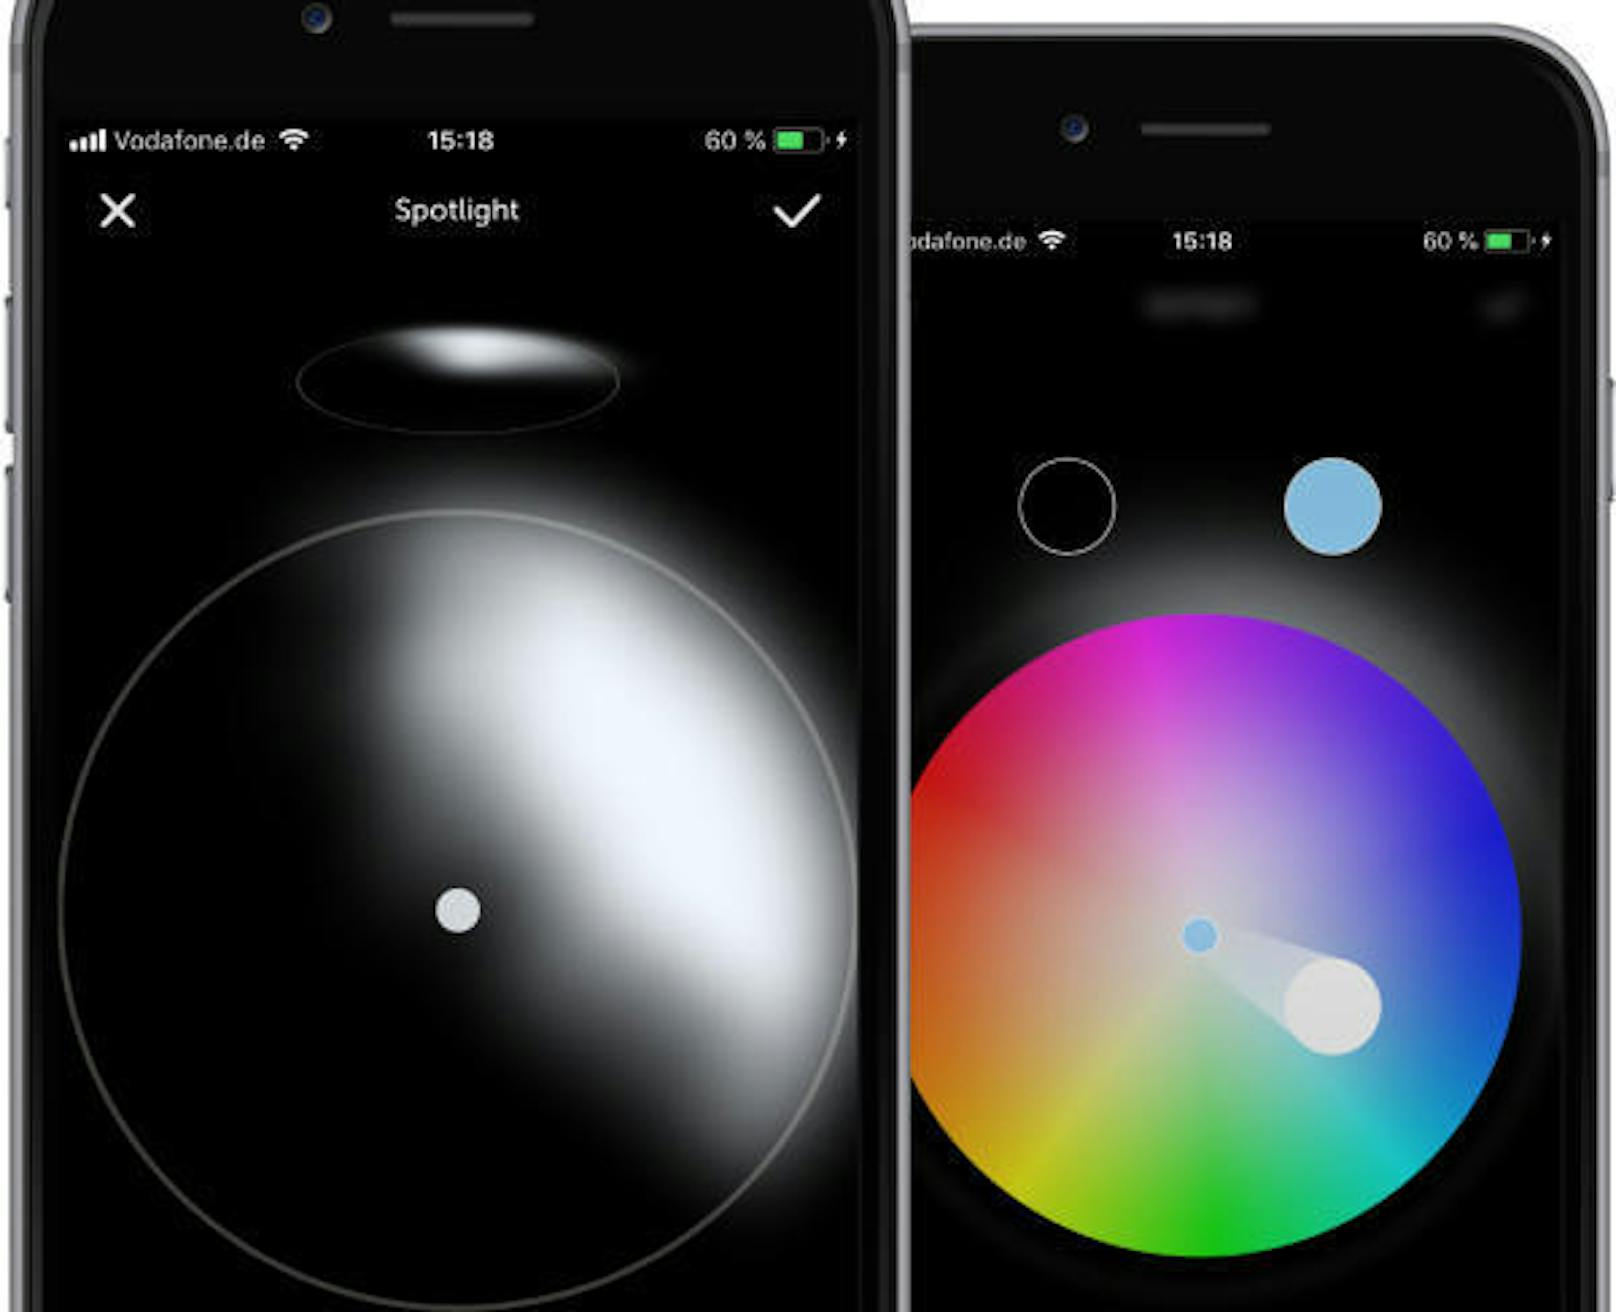 Das Design der App wirkt genauso wie das der Lampe: schlicht, aber durchdacht. Falls man einzelne Spot-Lichter will, können diese innerhalb des Kreises aufgezeichnet werden.